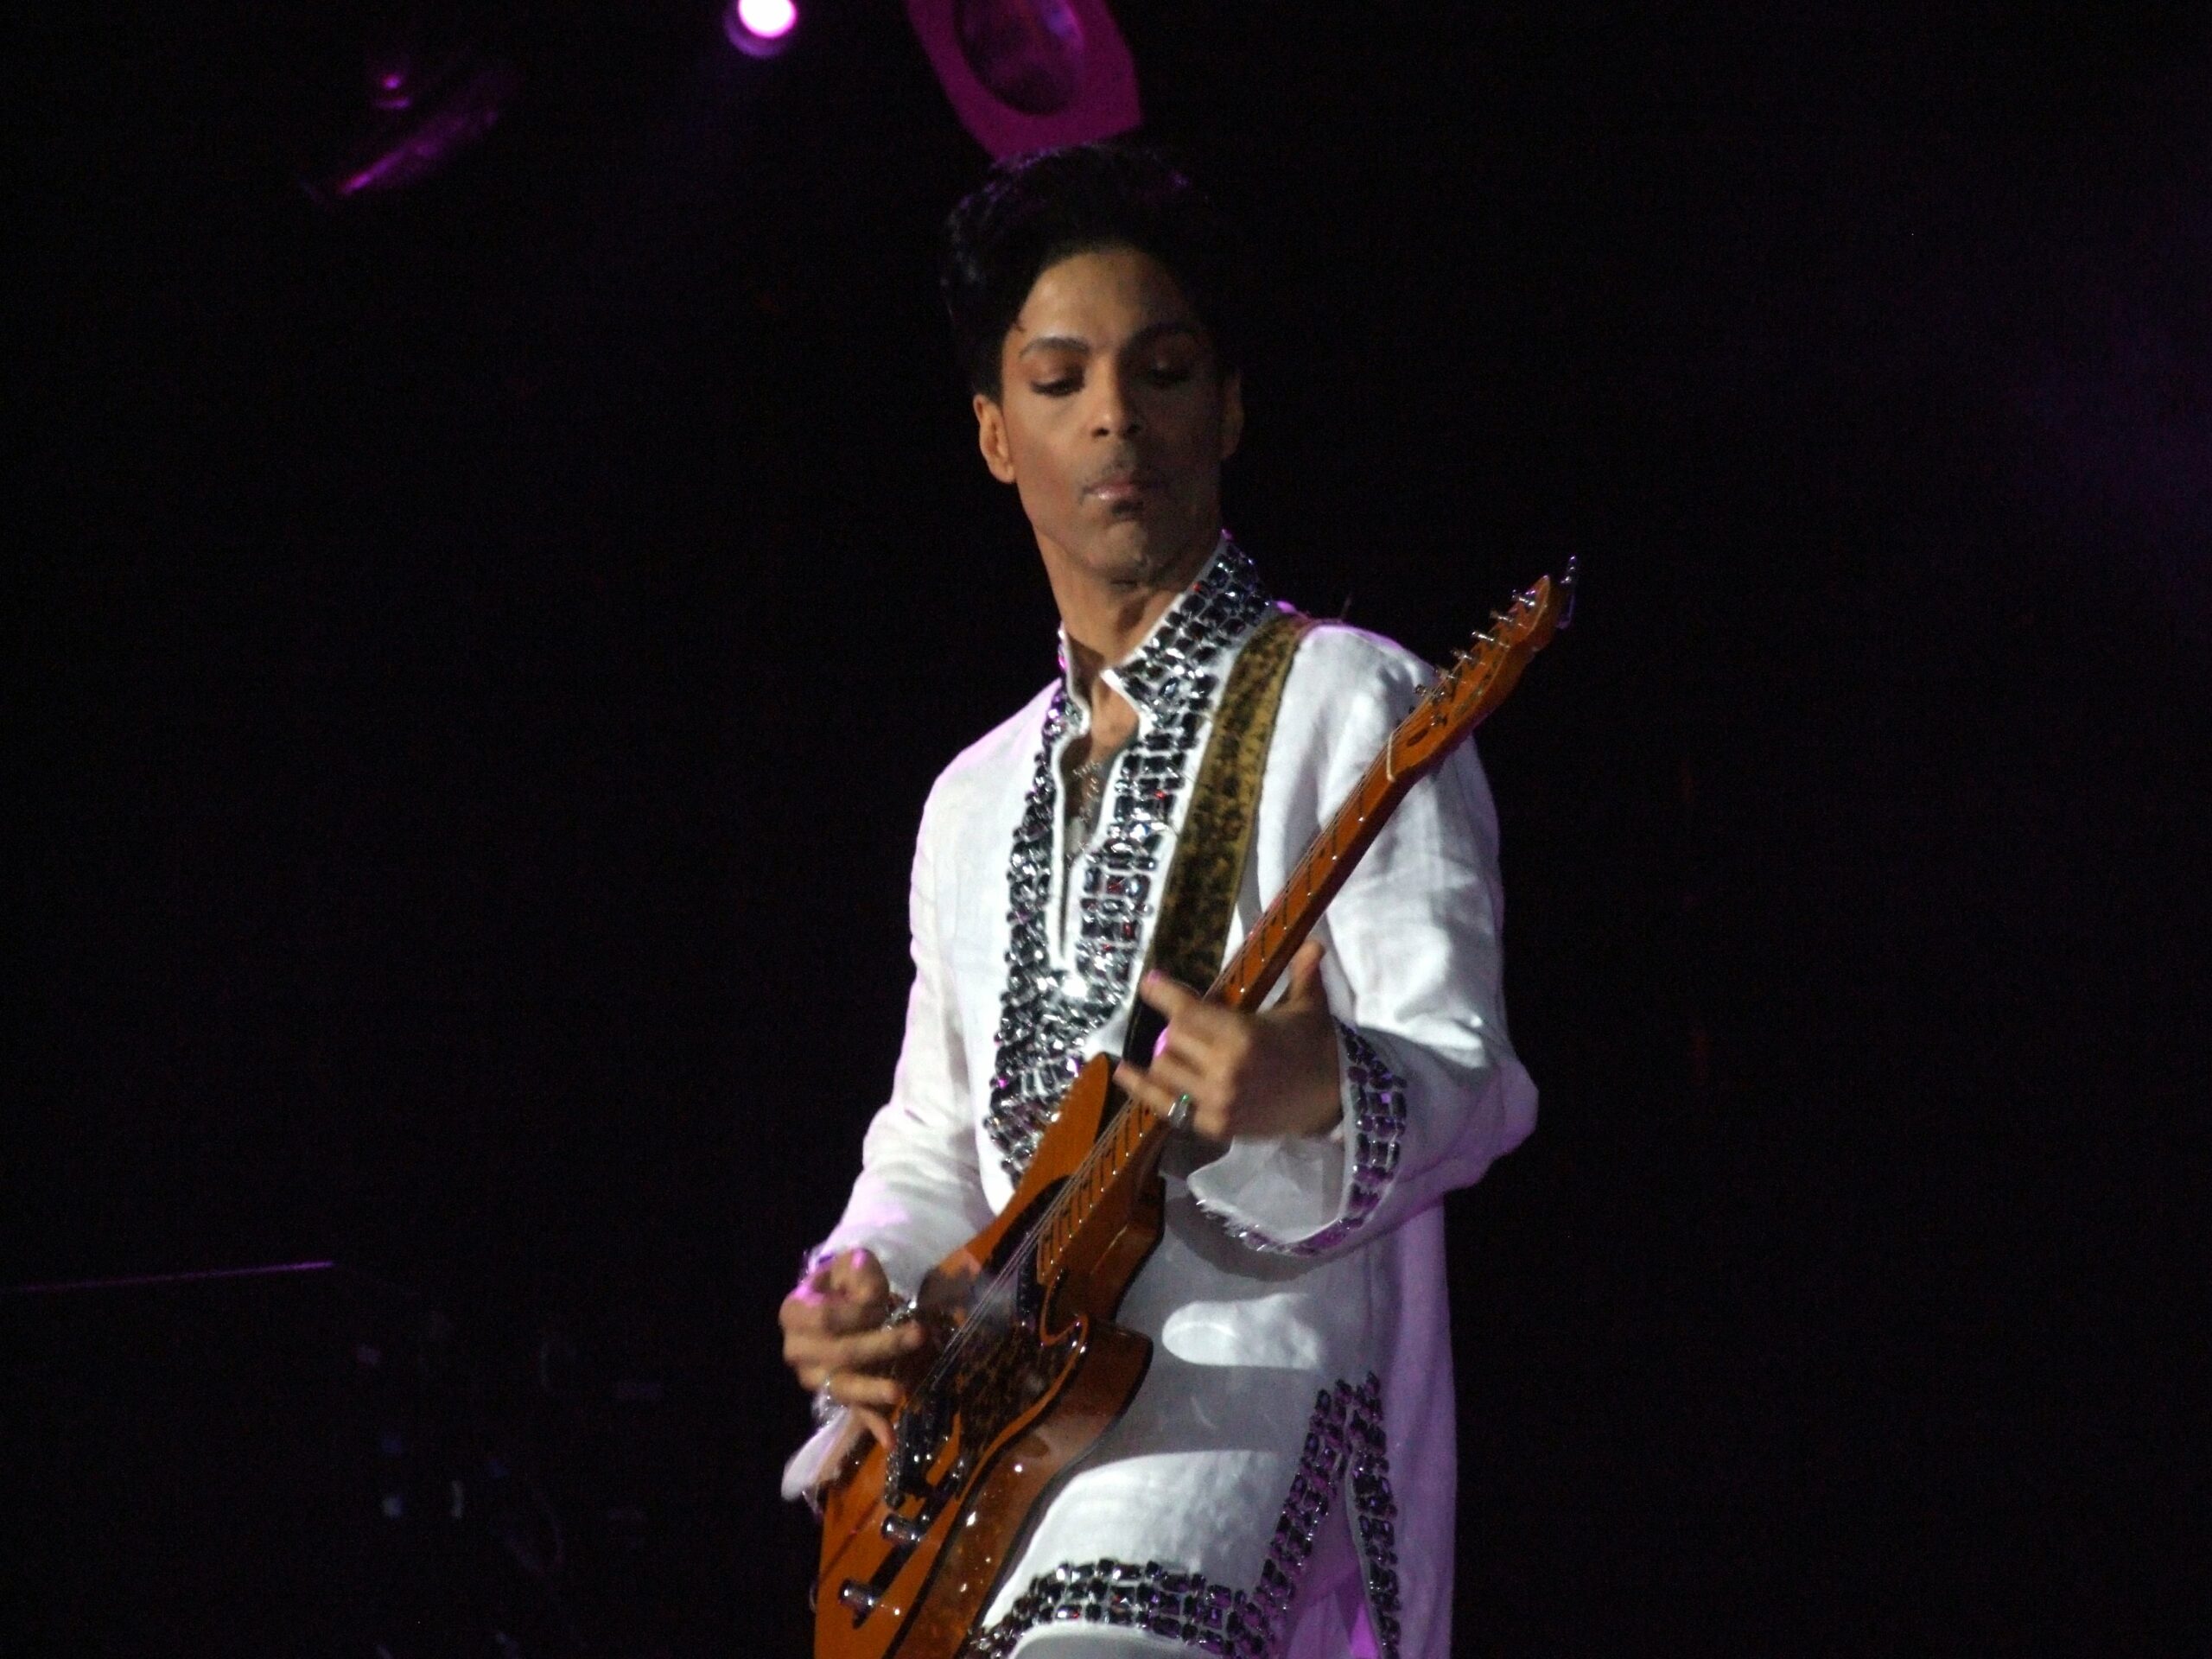 Prince (Prince Roger Nelson, Minneapolis 7 giugno 1958 – Chanhassen 21 aprile 2016) al concerto di Coachella nel 2008